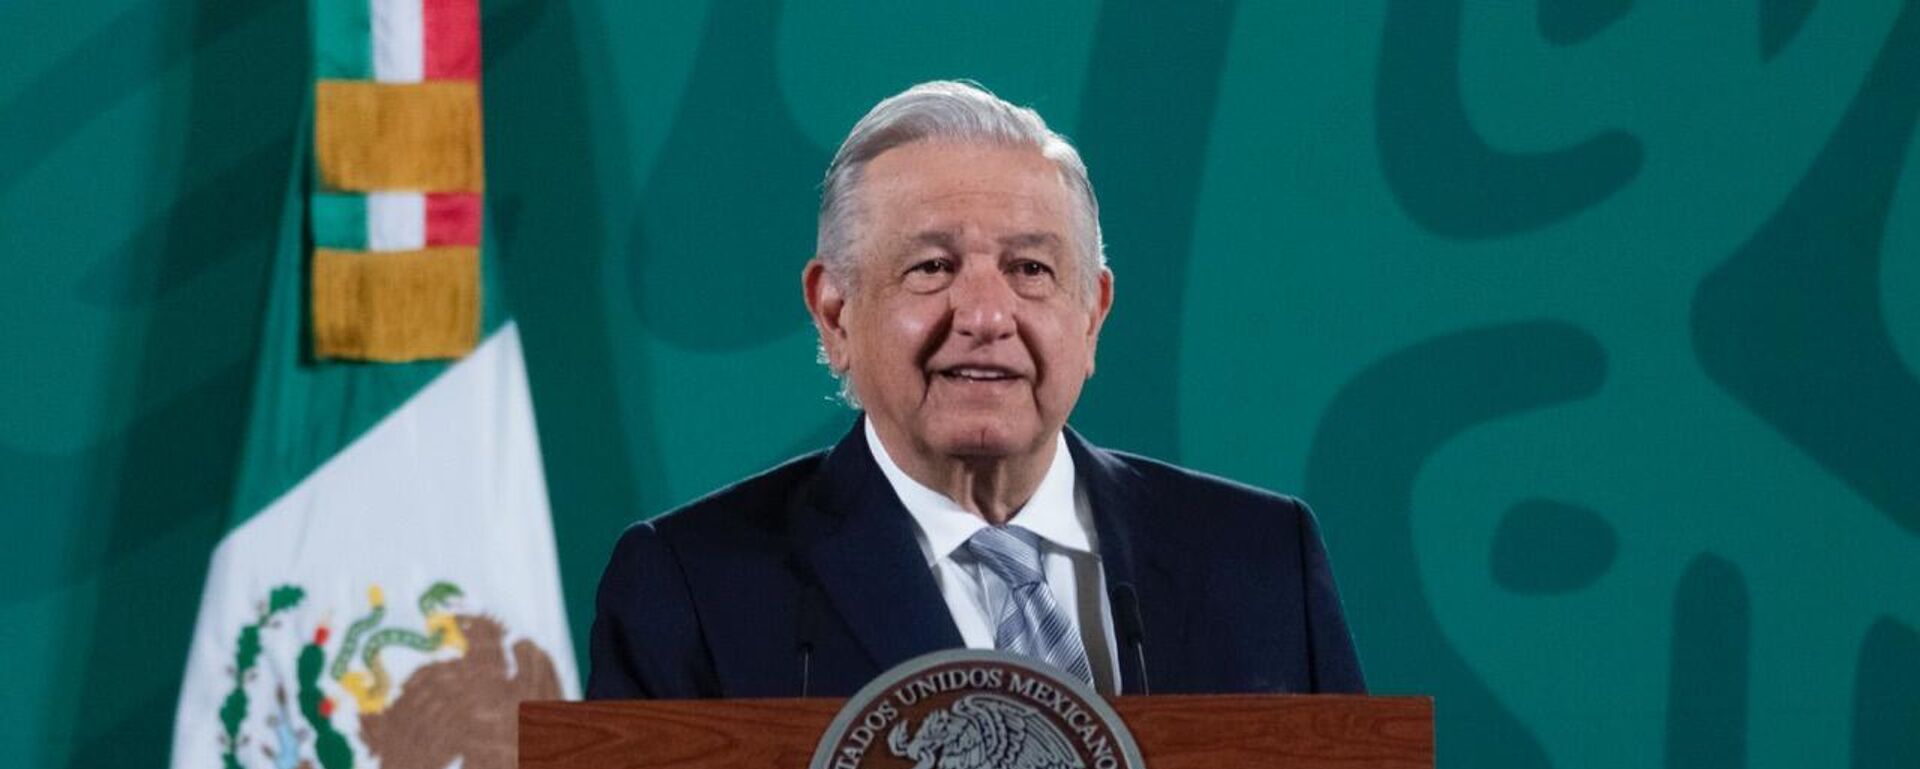 Andrés Manuel López Obrador, presidente de México - Sputnik Mundo, 1920, 24.09.2021